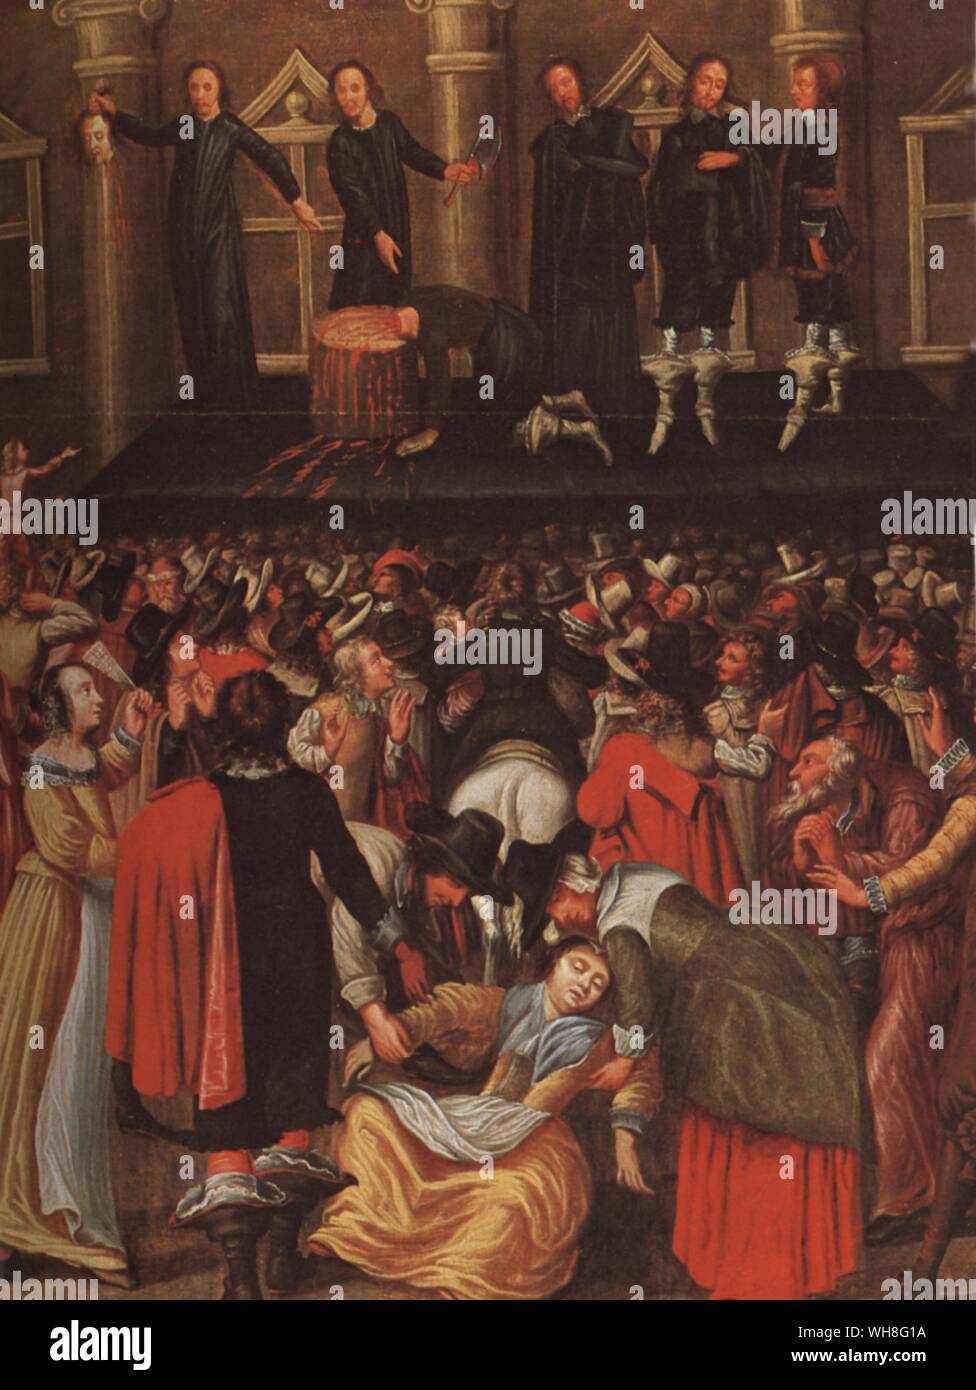 Eindruck eines Künstlers, der die Hinrichtung von Charles I (1600-1649). König von England, Schottland und Irland. Dieser Krieg ohne einen Feind von Richard Ollard, Seite 201. Als Charles enthauptet wurde am 30. Januar 1649, ein Stöhnen war von der versammelten Menge, von denen einige dann ihre Taschentücher in seinem Blut getauchten gehört, damit die Verehrung der Märtyrer König ab. Es gibt einige historische Debatte über die Identität des Mannes, der den König enthauptet, die bei der Szene maskiert wurde. Stockfoto